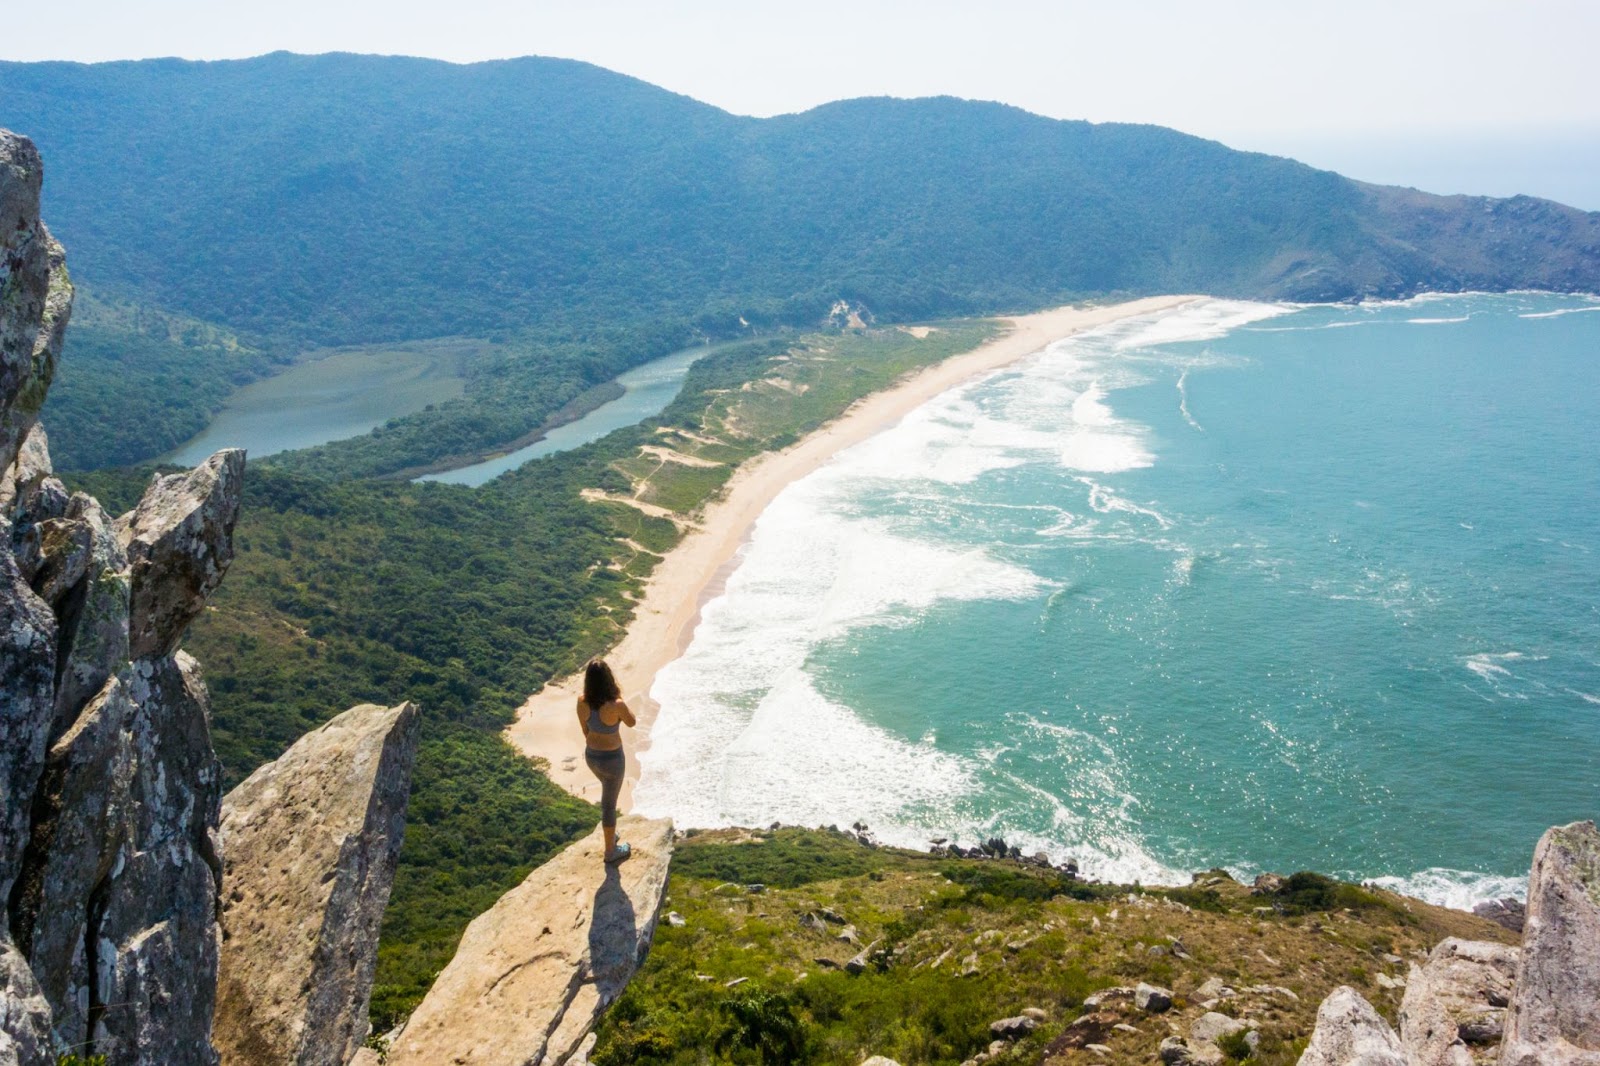 Turista de pé em uma pedra suspensa alta, no Morro da Coroa. Ela contempla o mar claro da Praia da Lagoinha do Leste, que aparece embaixo, e as montanhas verdes.